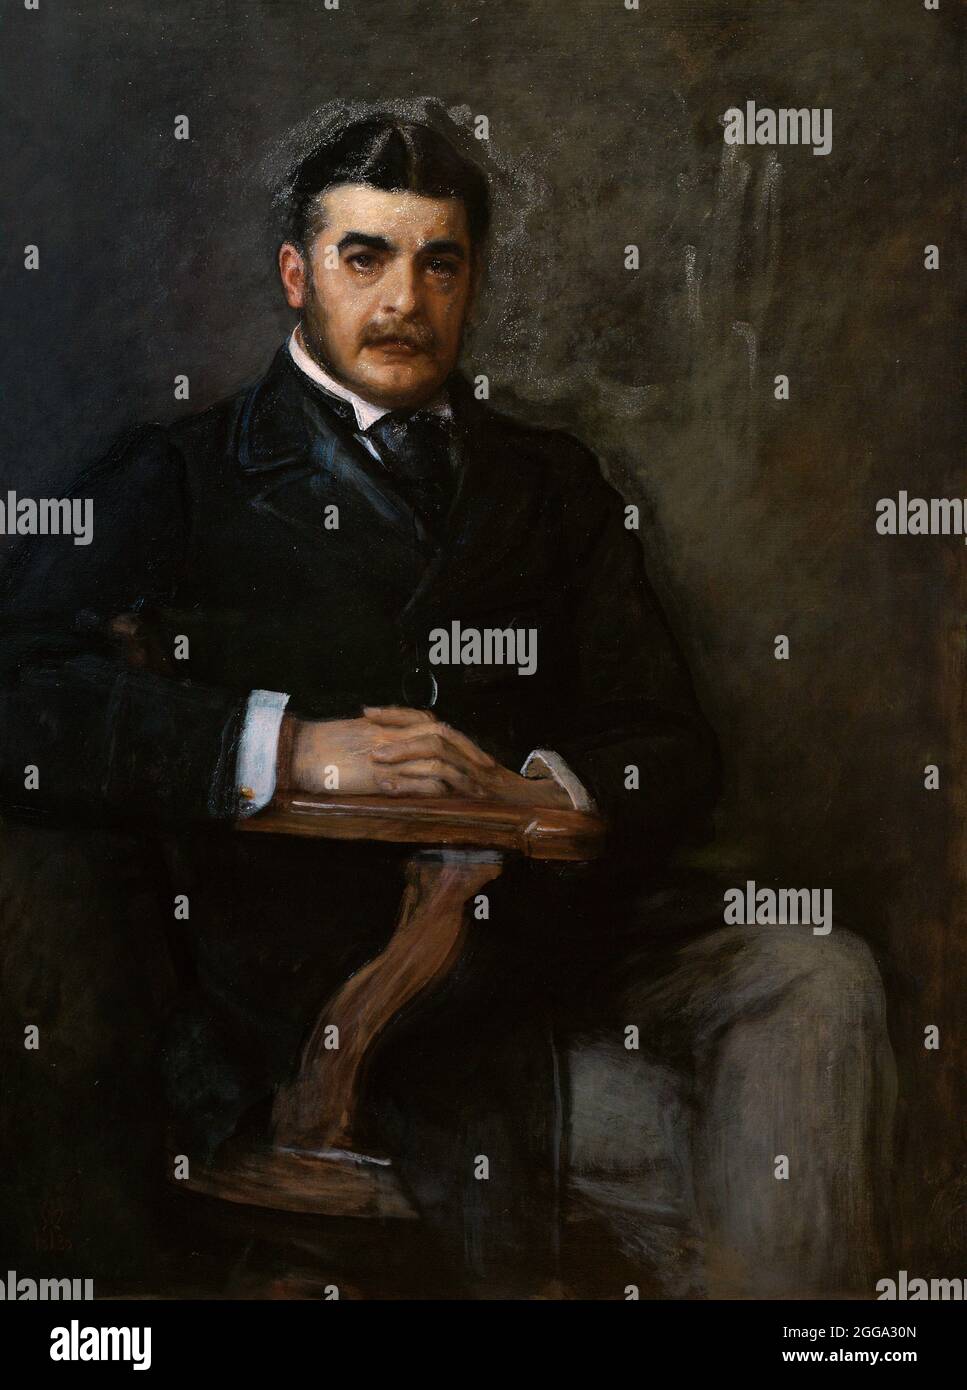 Sir Arthur Sullivan (Arthur Seymour Sullivan) (1842-1900). Compositore inglese. Ritratto di Sir John Everett Millais (1829-1896). Olio su tela (115,6 x 87 cm), 1888. National Portrait Gallery. Londra, Inghilterra, Regno Unito. Foto Stock